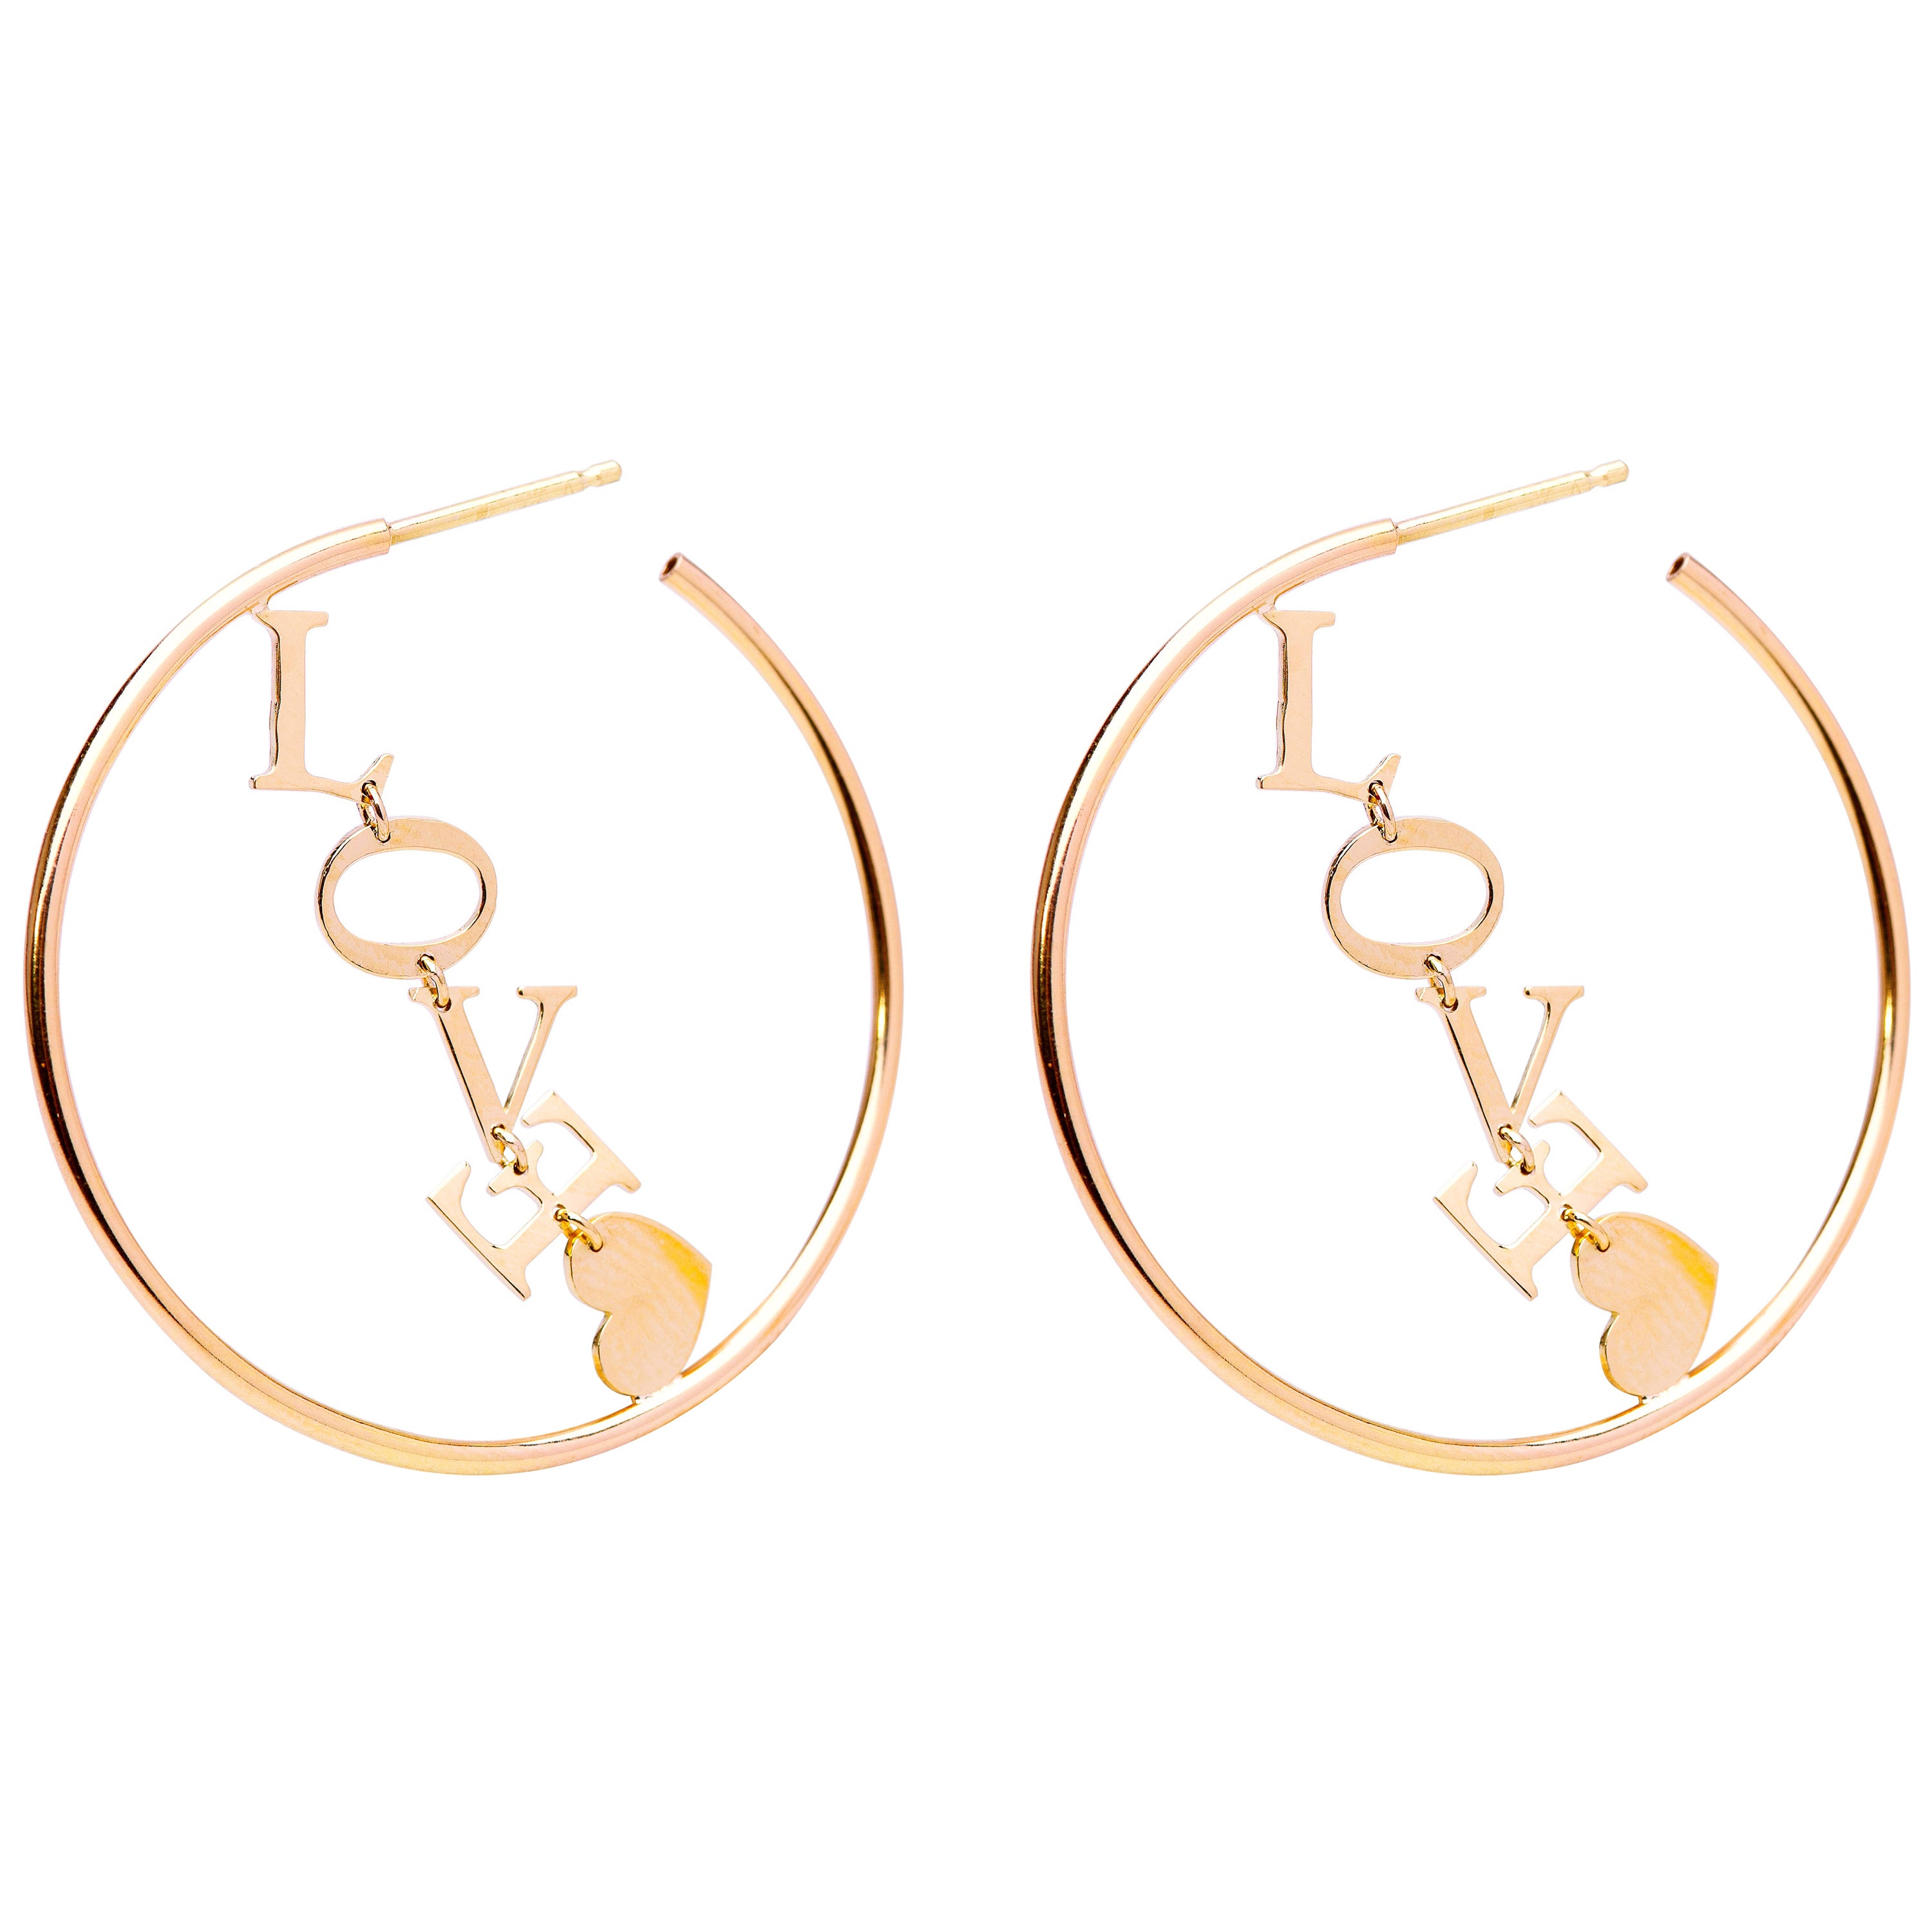 Boucles d'oreilles cercles Love en or jaune 18 carats avec lettres, design artisanal